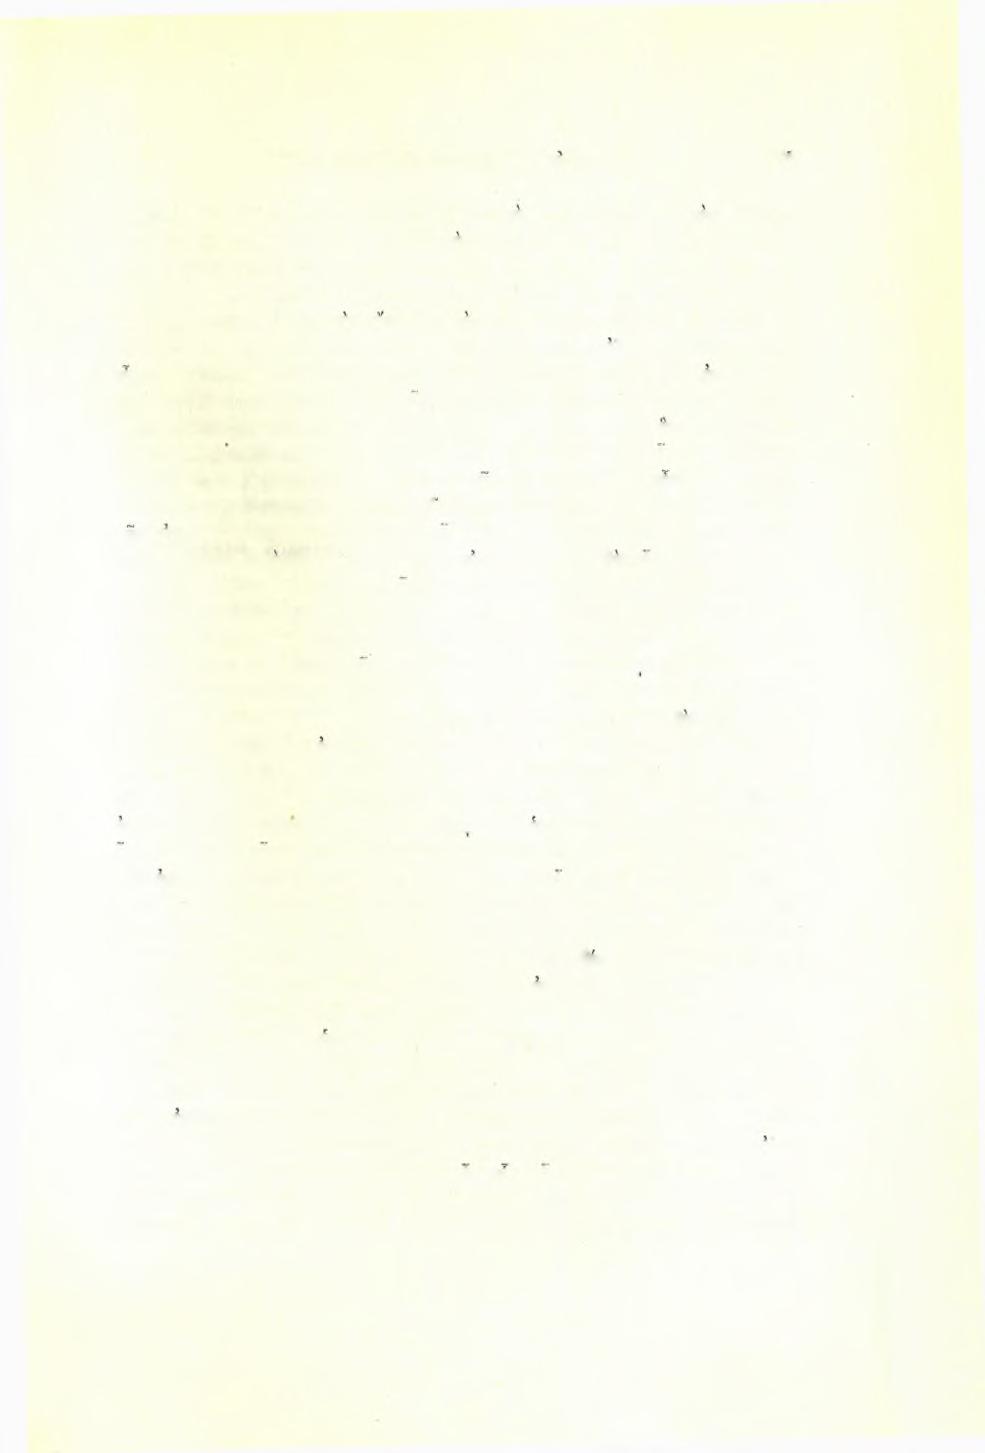 Σπυρίδωνος Μαρινάτου: Άνασκαφαι Πύλου 17ο θετοΰνται μερικαί πλάκες καί χώμα, ώστε να σχηματίζεται μικρός τύμβος.